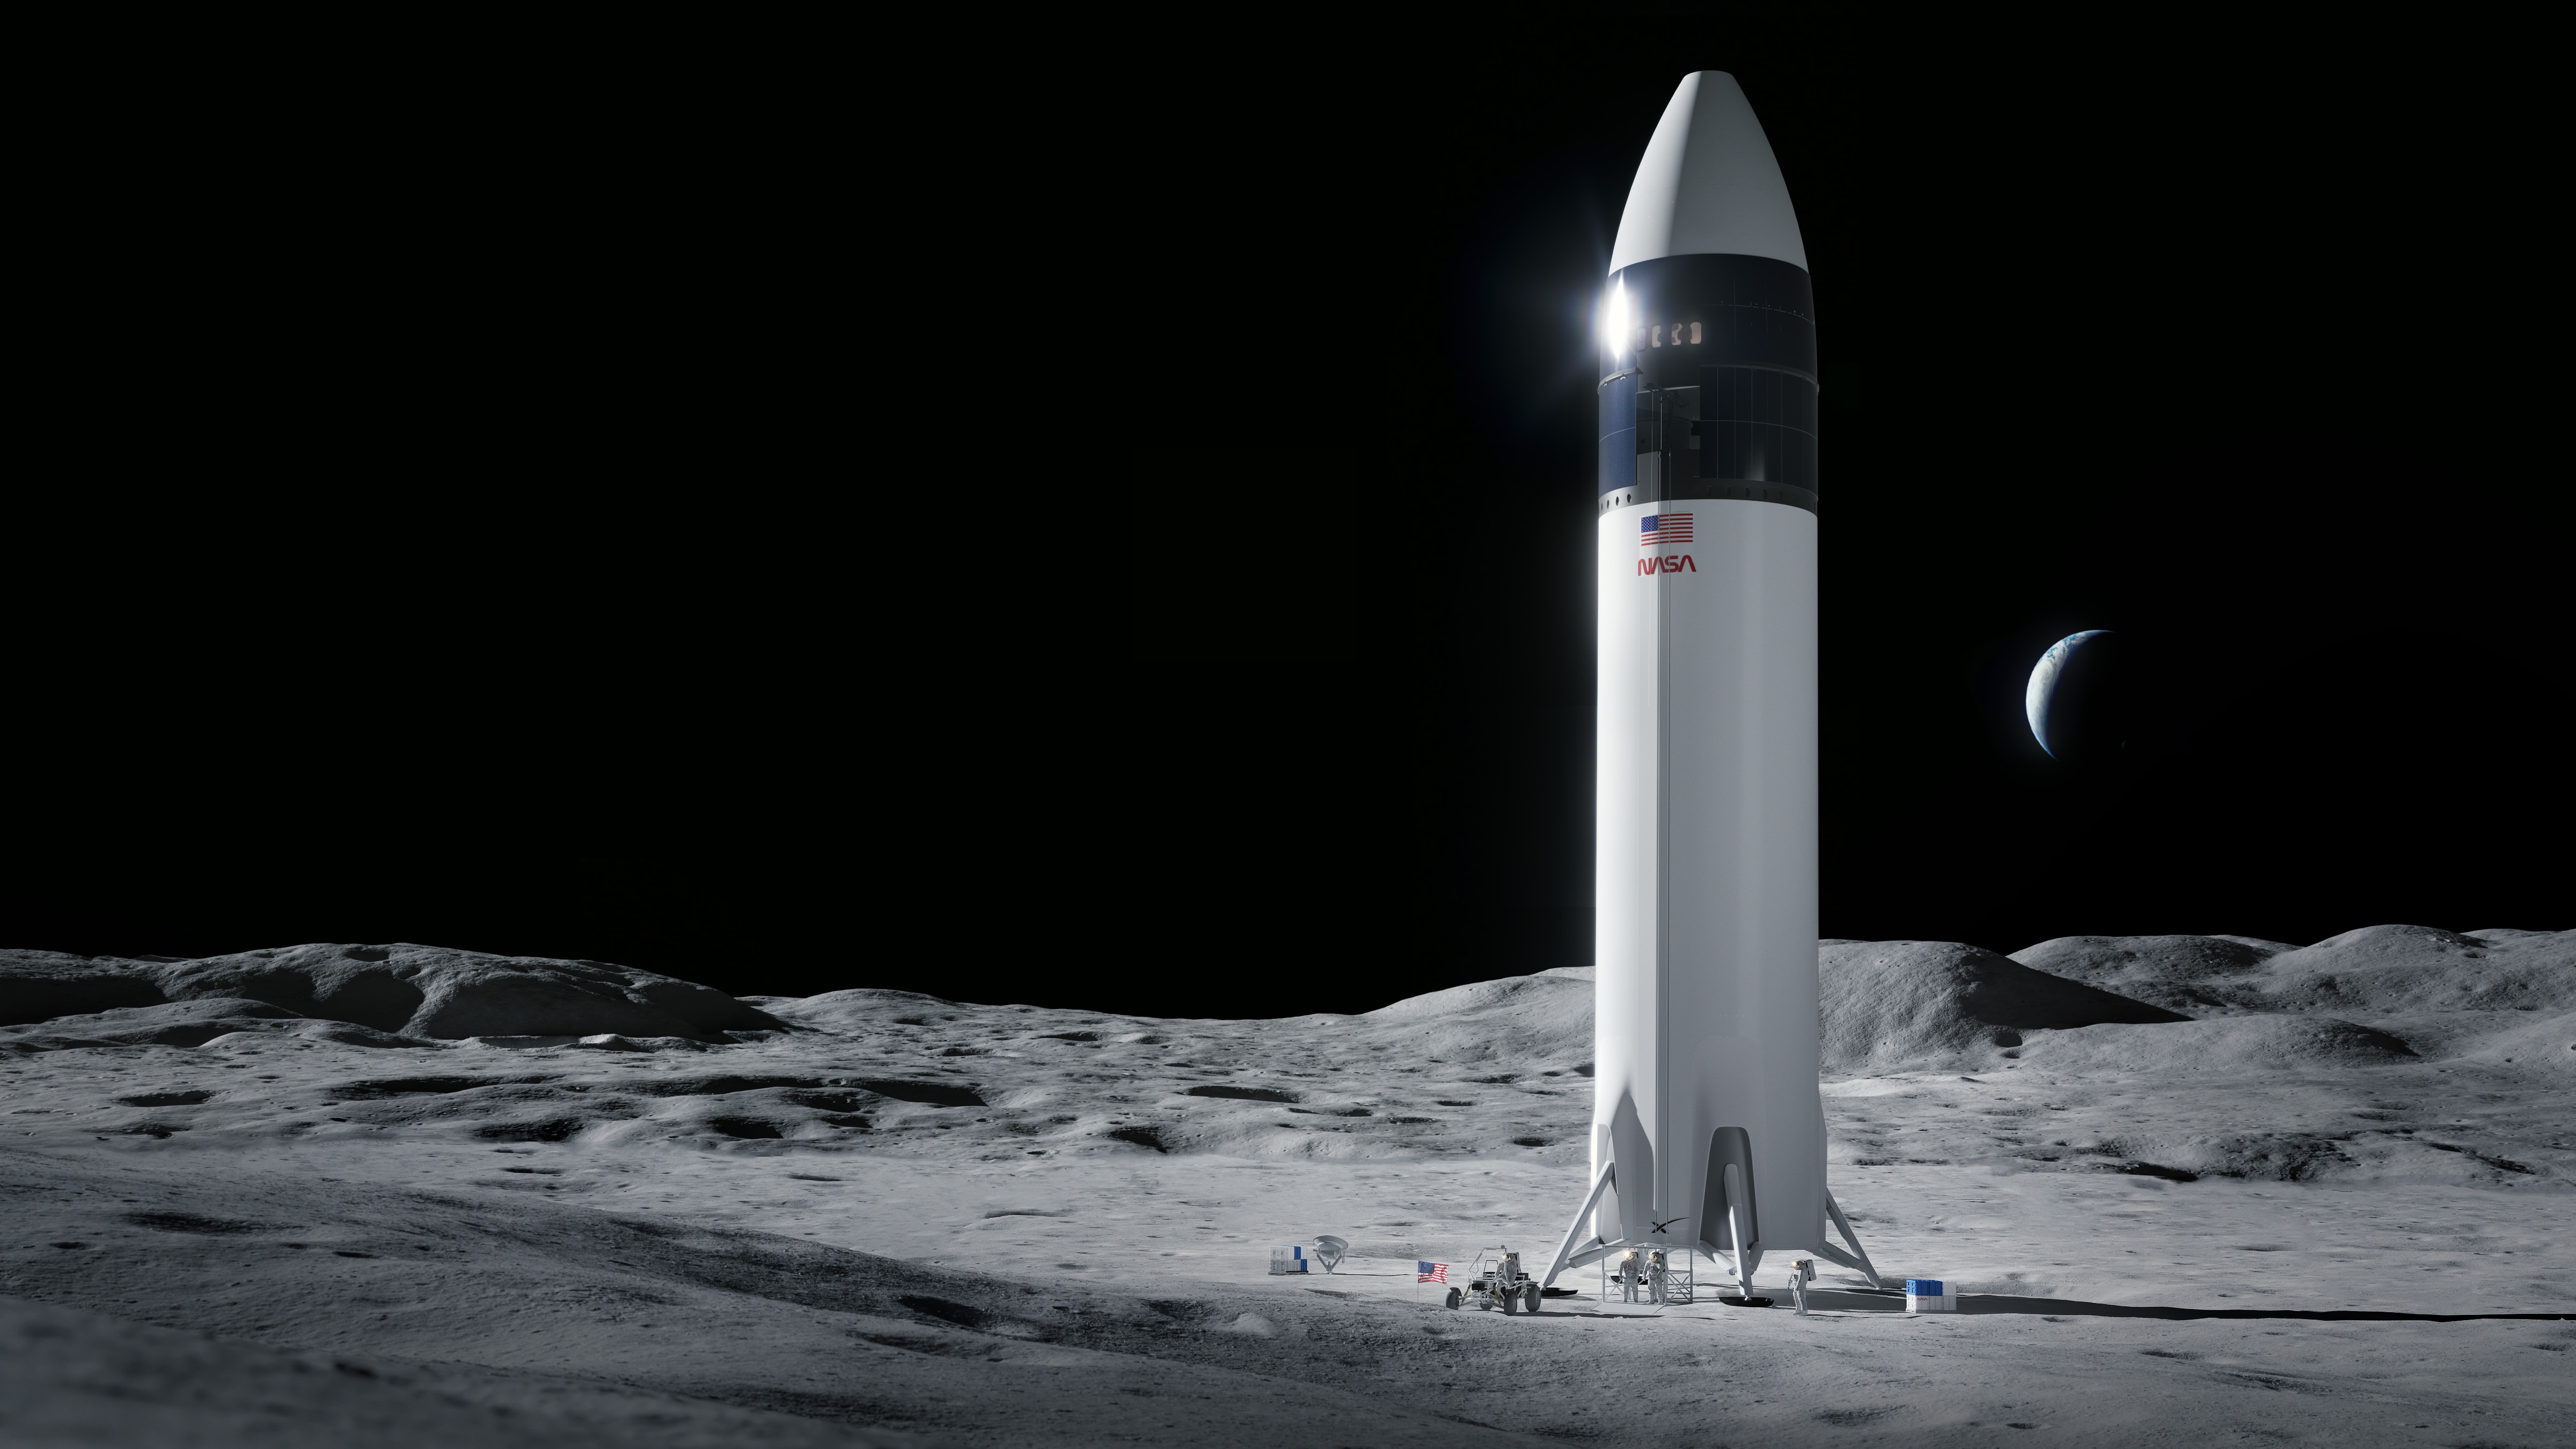 Hình ảnh về tàu đổ bộ Starship do SpaceX xây dựng, giúp đưa con người lên mặt trăng vào năm 2024 (Ảnh: NASA).